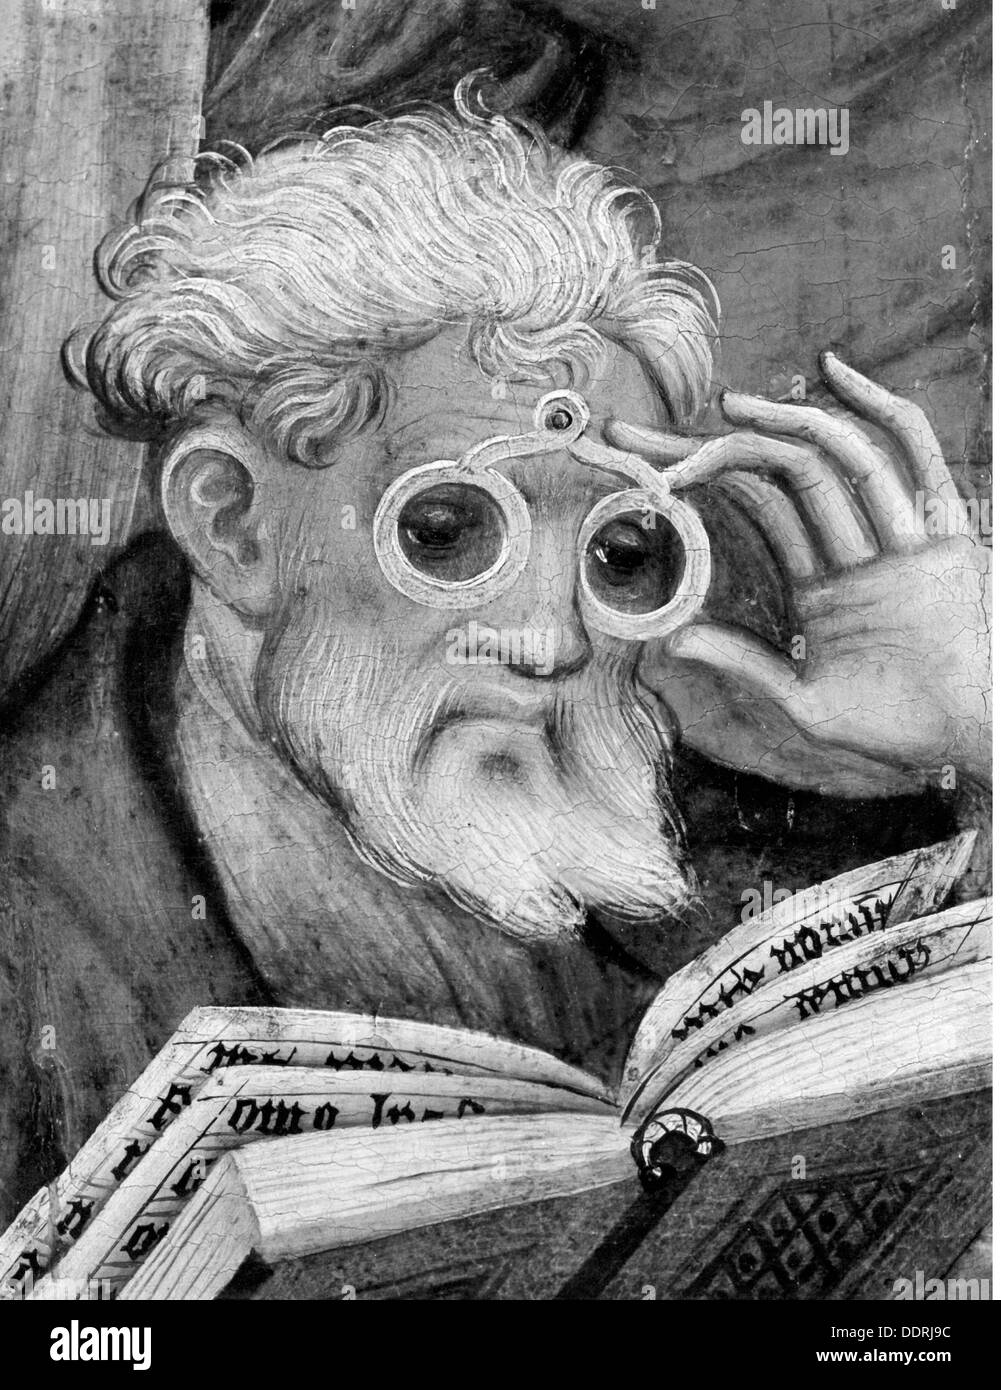 Médecine, ophtalmologie, avec des lunettes, lecture apôtre, peinture par Conrad von Soest (vers 1370 - après 1422), détail, 1403, droits additionnels-Clearences-non disponible Banque D'Images